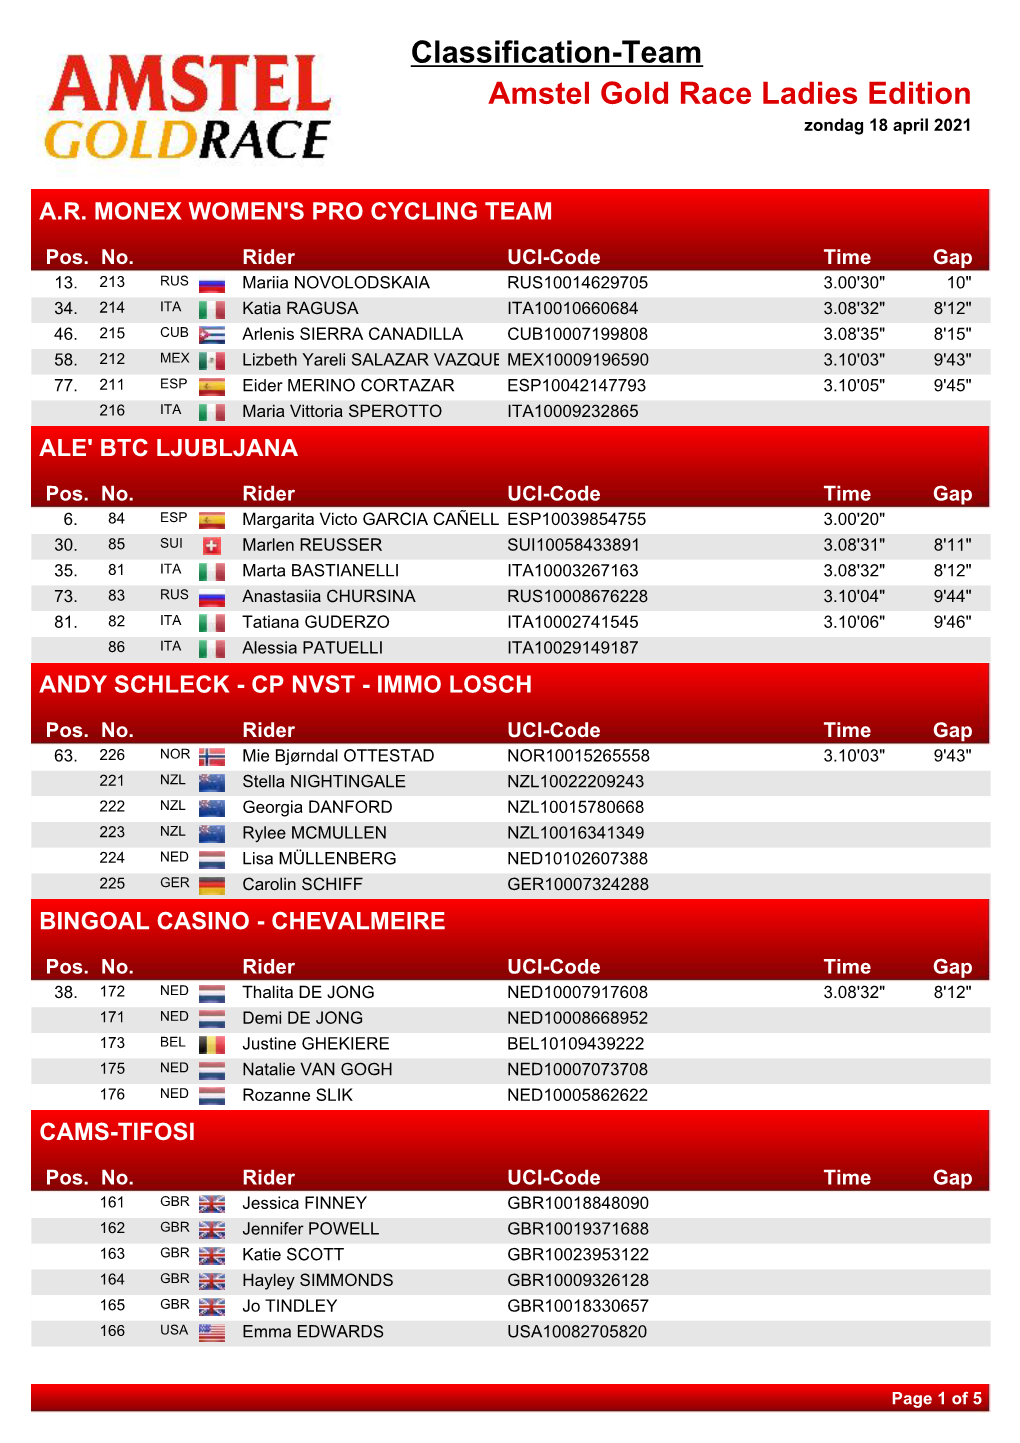 Classification-Team Amstel Gold Race Ladies Edition Zondag 18 April 2021